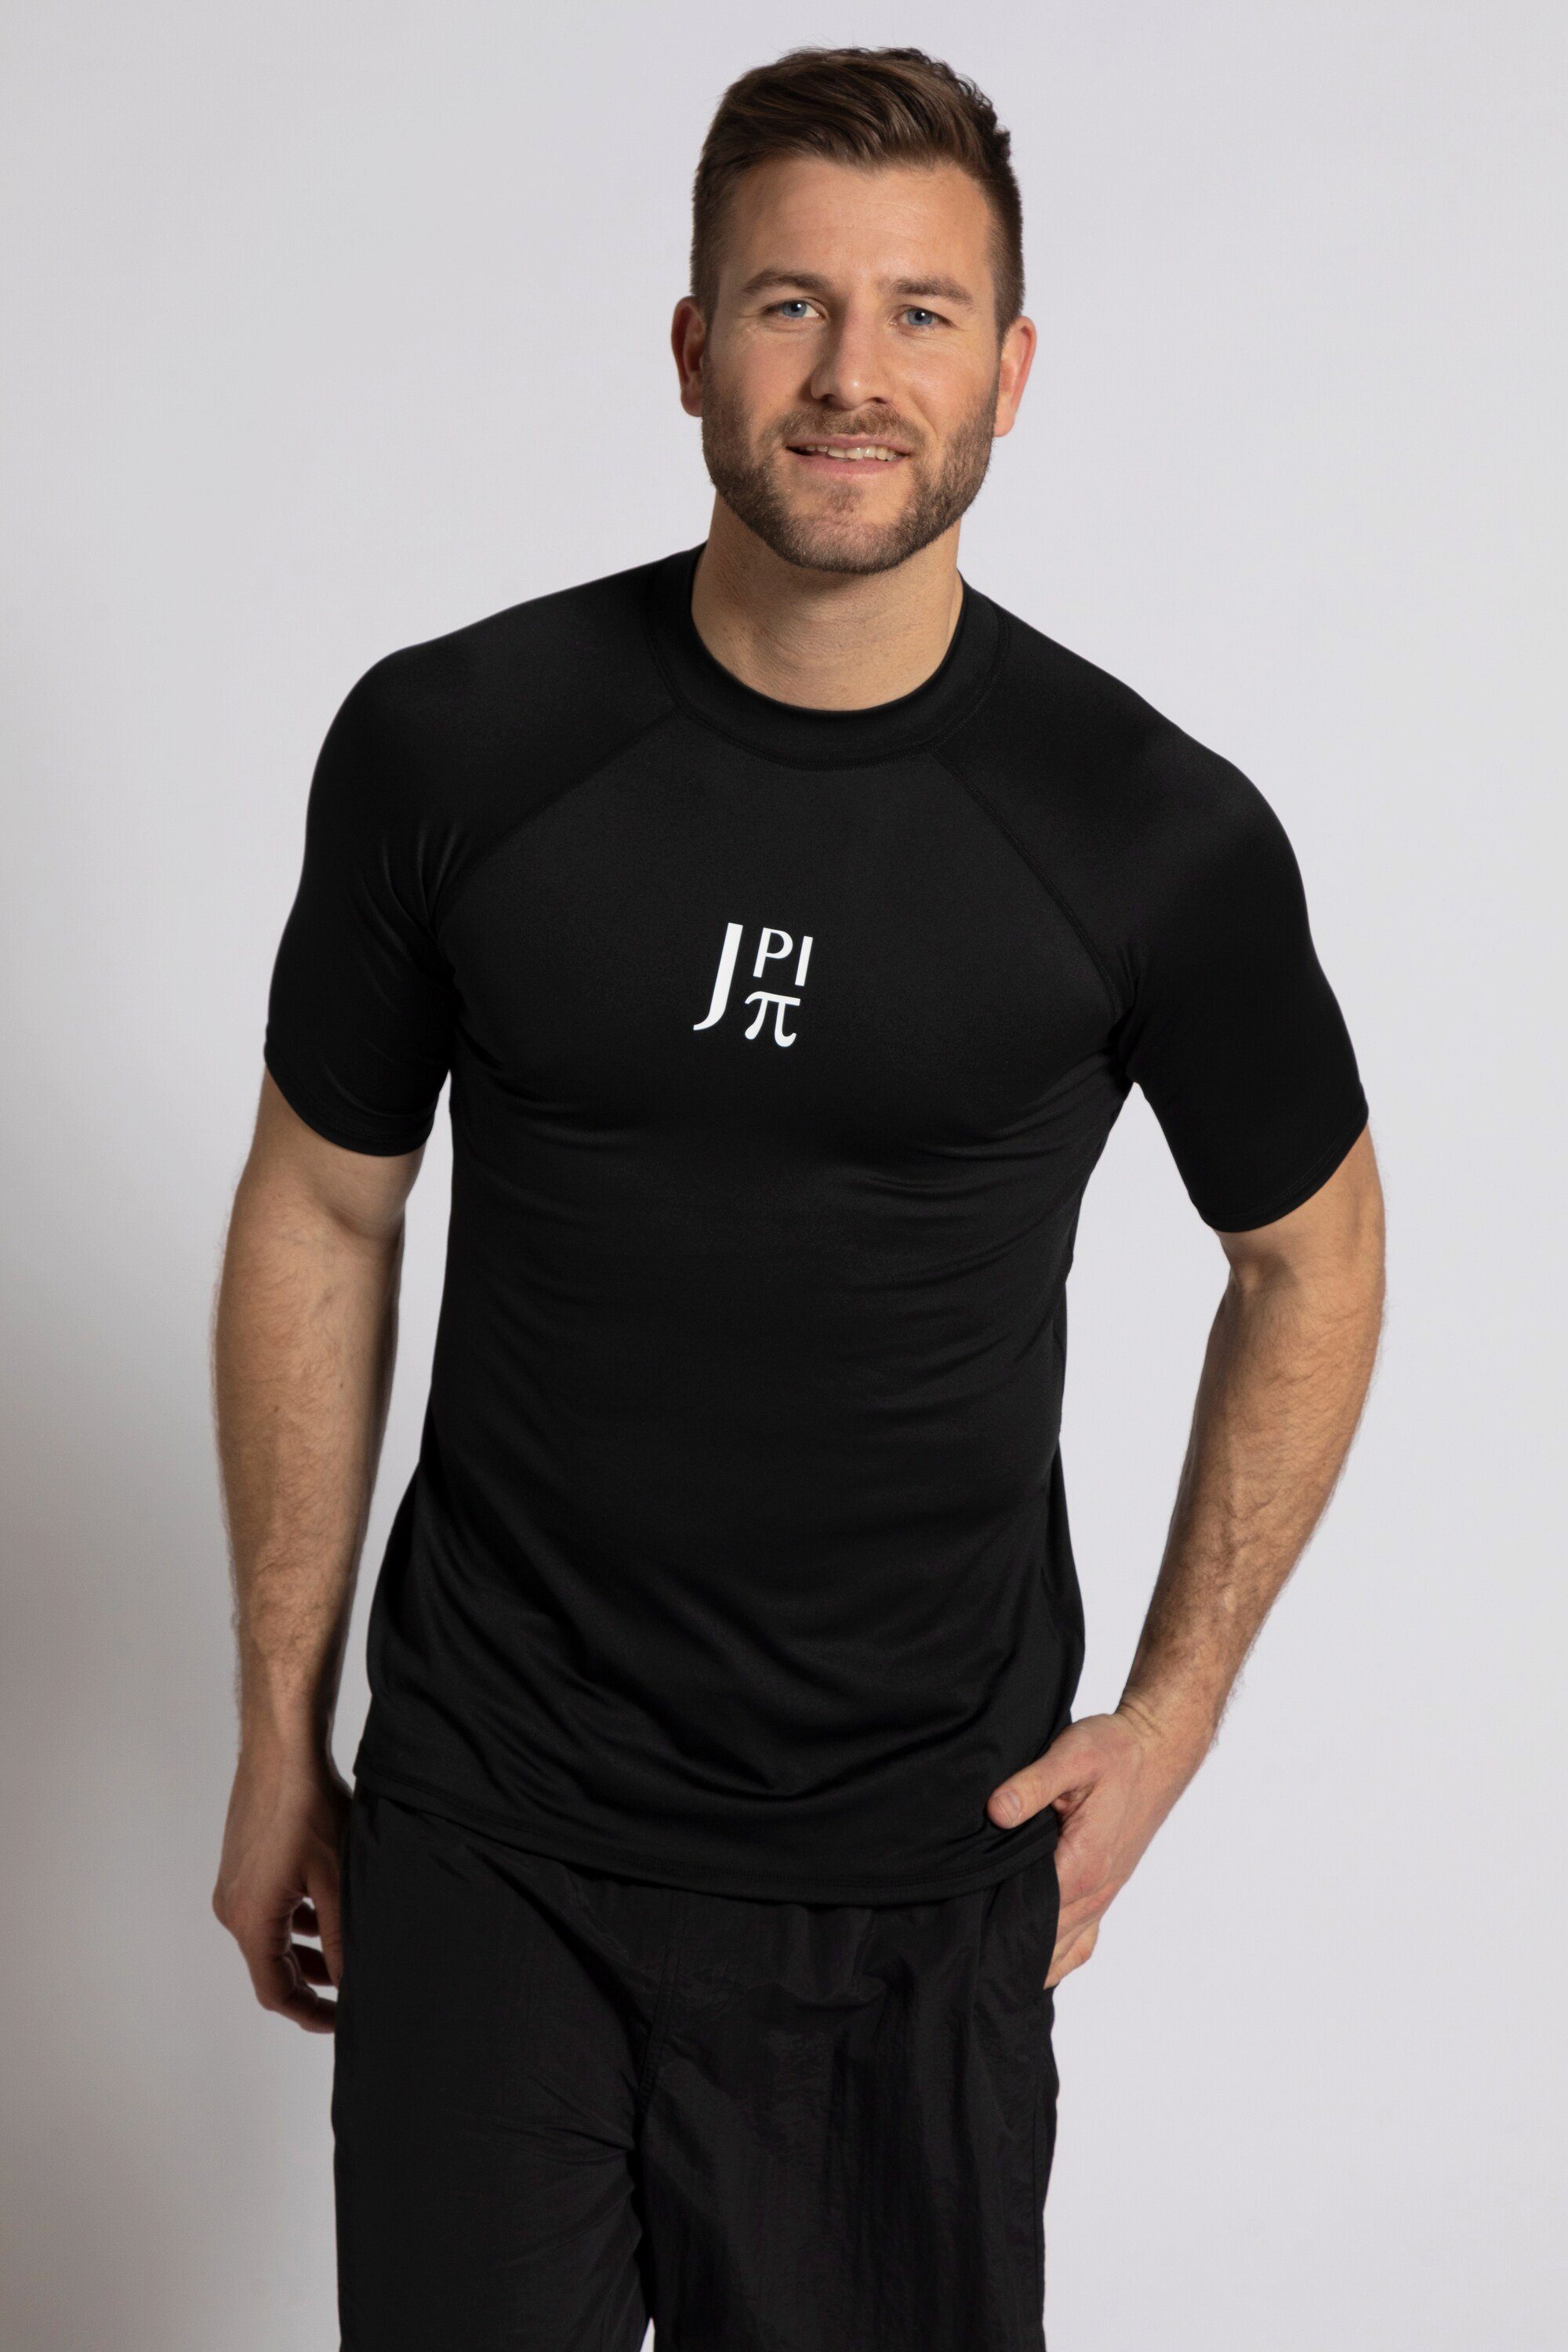 T-Shirt JP1880 schwarz Stehkragen Schwimmshirt UV-Schutz Halbarm